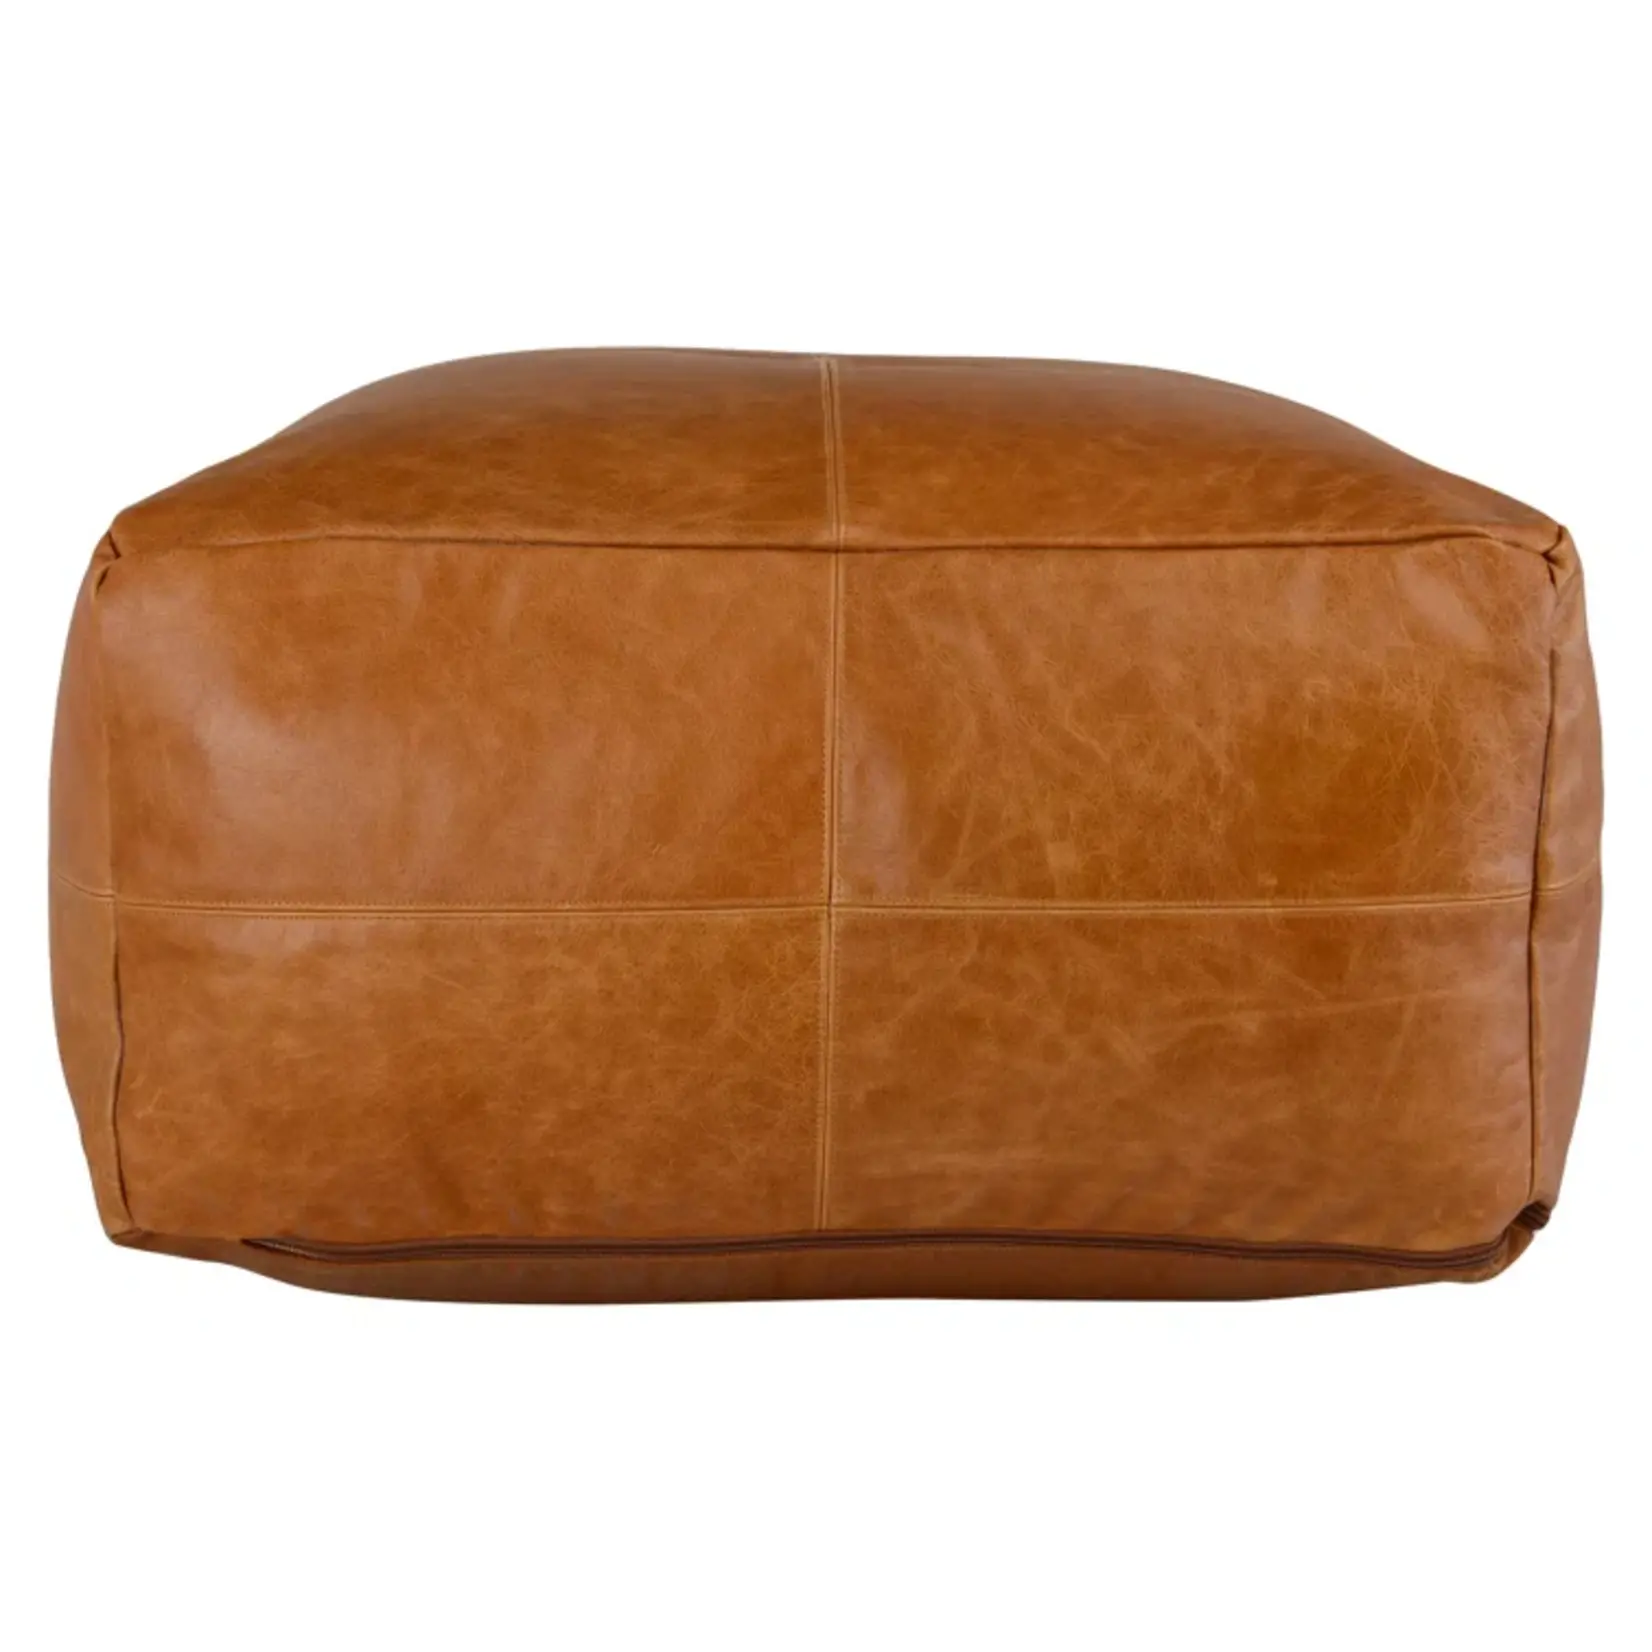 Nova Birch Lane Cutler Leather Pouf